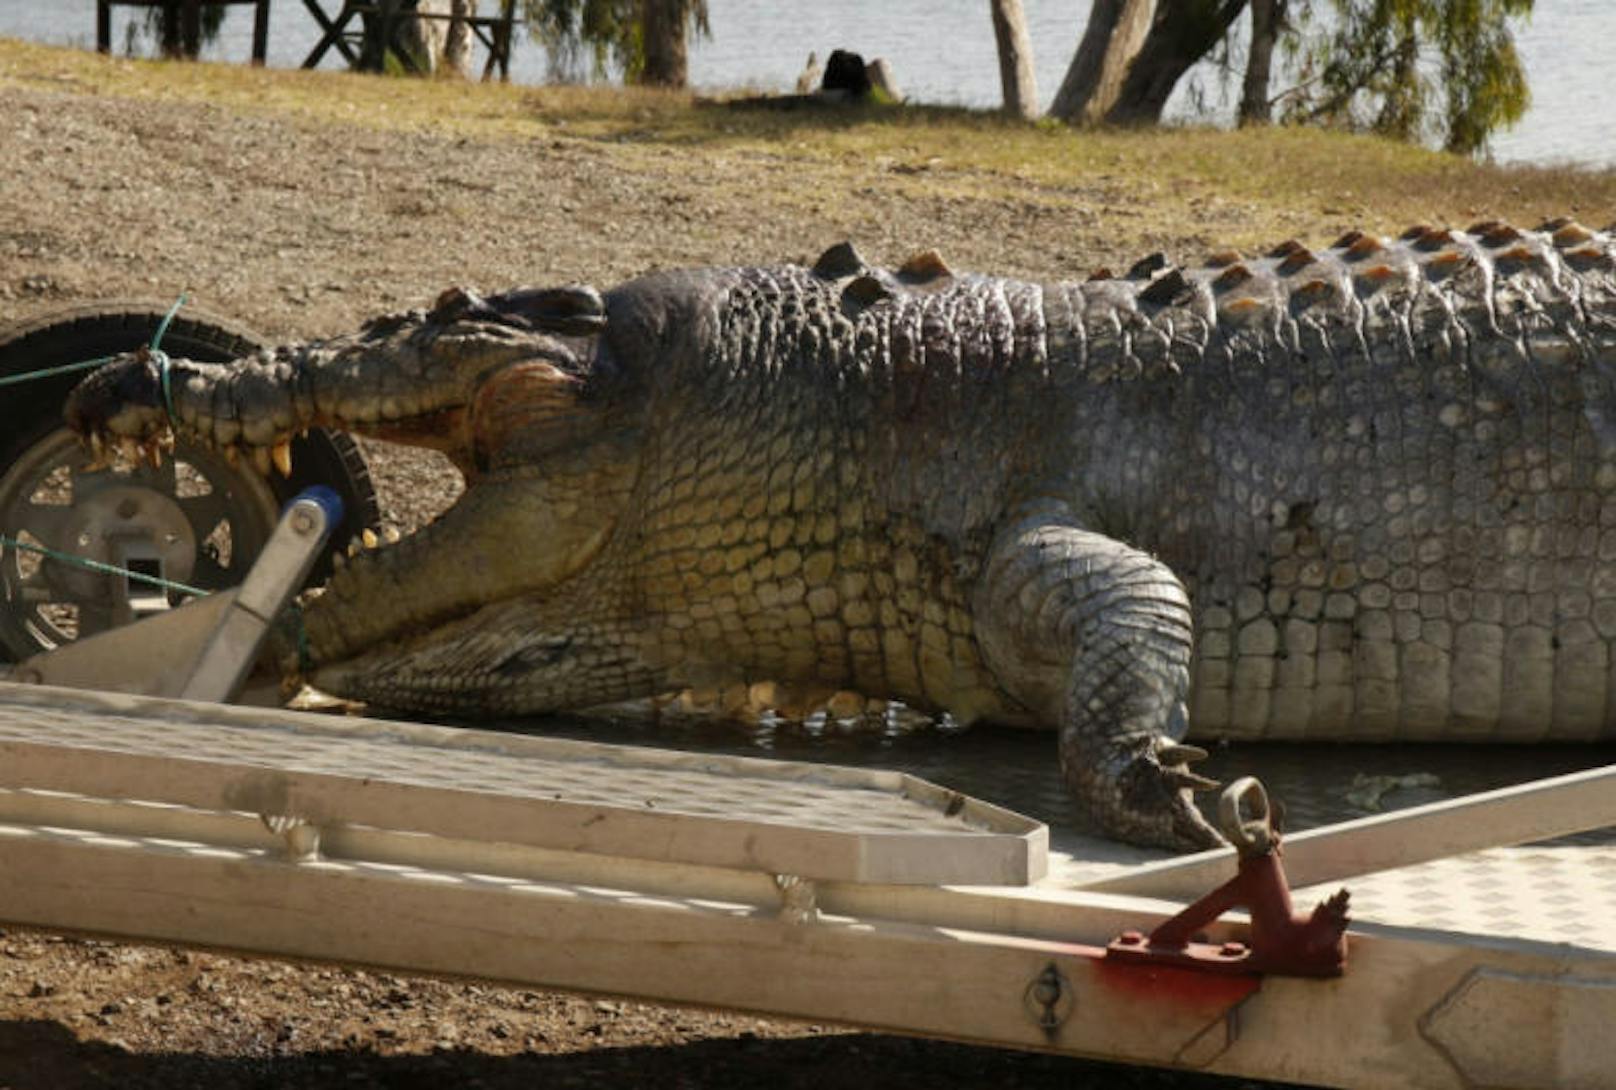 Das Krokodil wurde illegal erschossen. Die Behörde sucht nun nach den Verantwortlichen